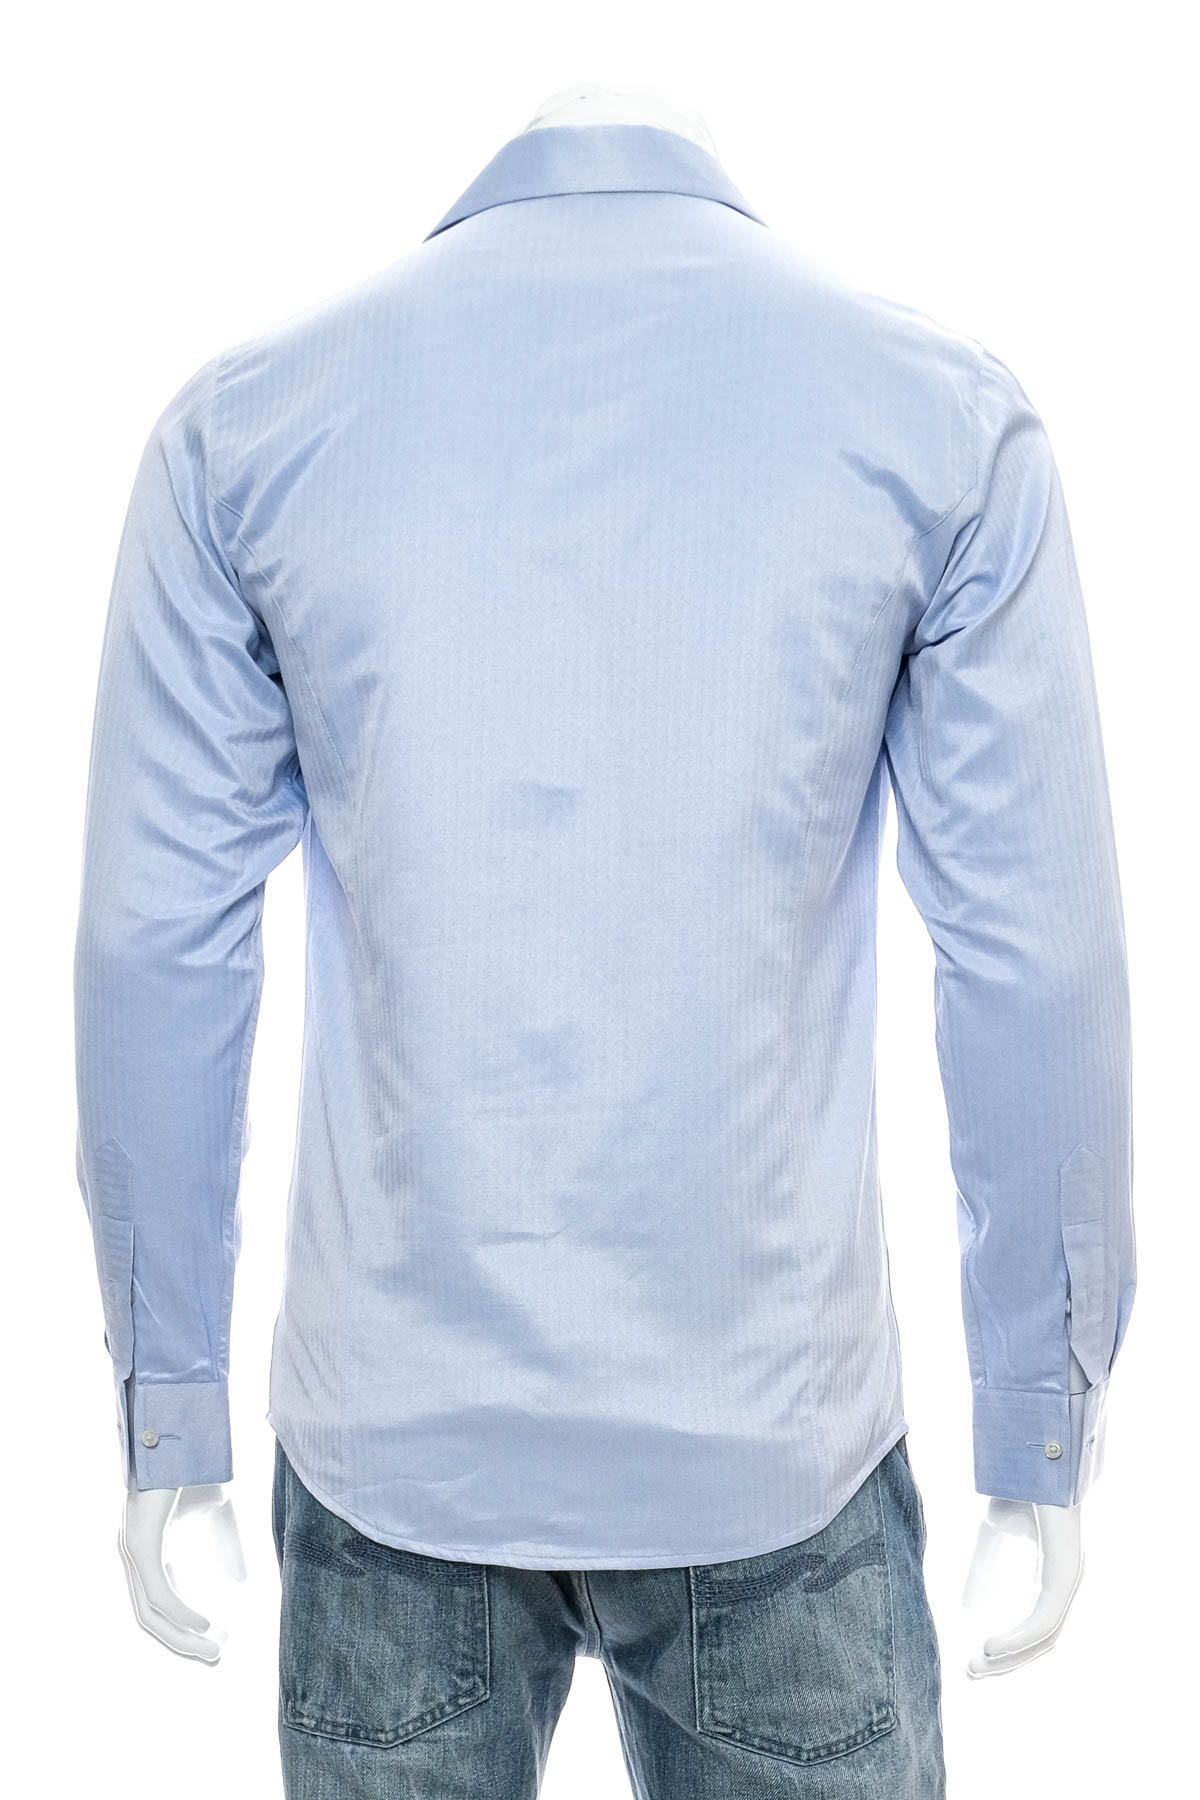 Ανδρικό πουκάμισο - Frant - 1